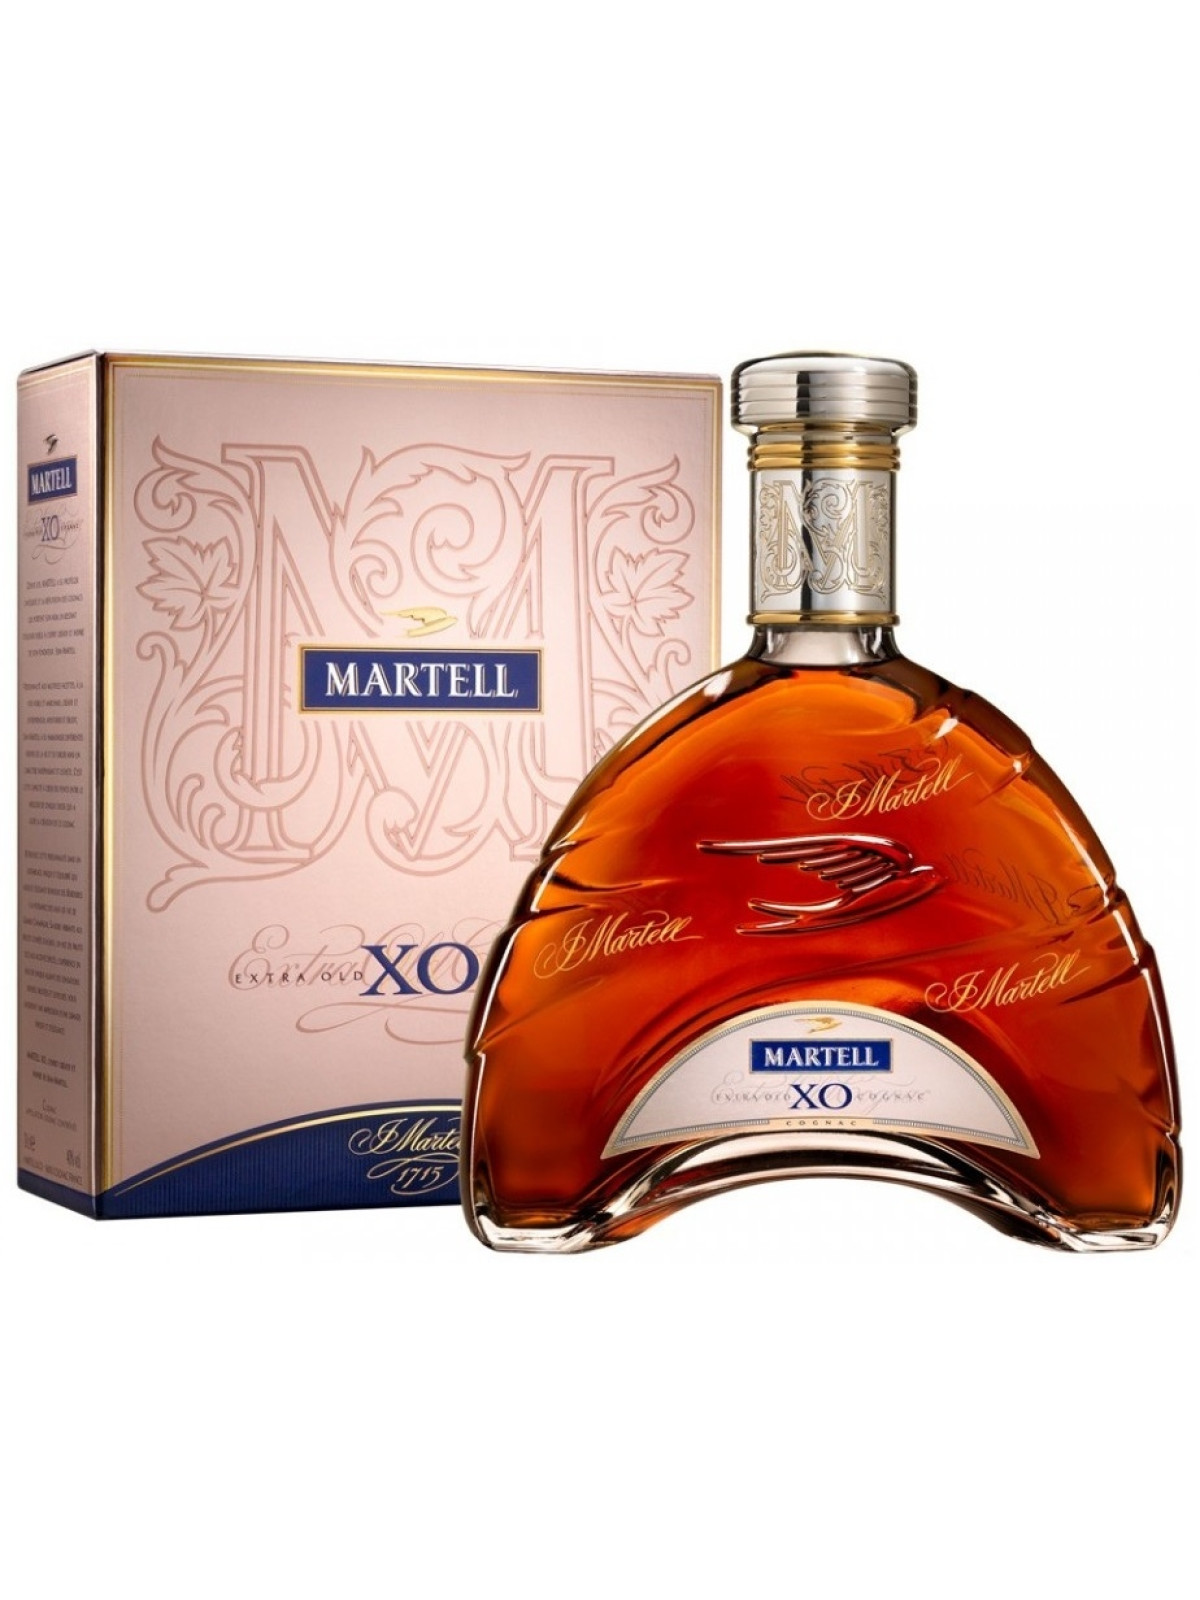 Martell 0.7 цена. Коньяк Мартель XO. Вино Мартель. Коньяк Мартель с бокалами. Коньяк Мартель самый дорогой.